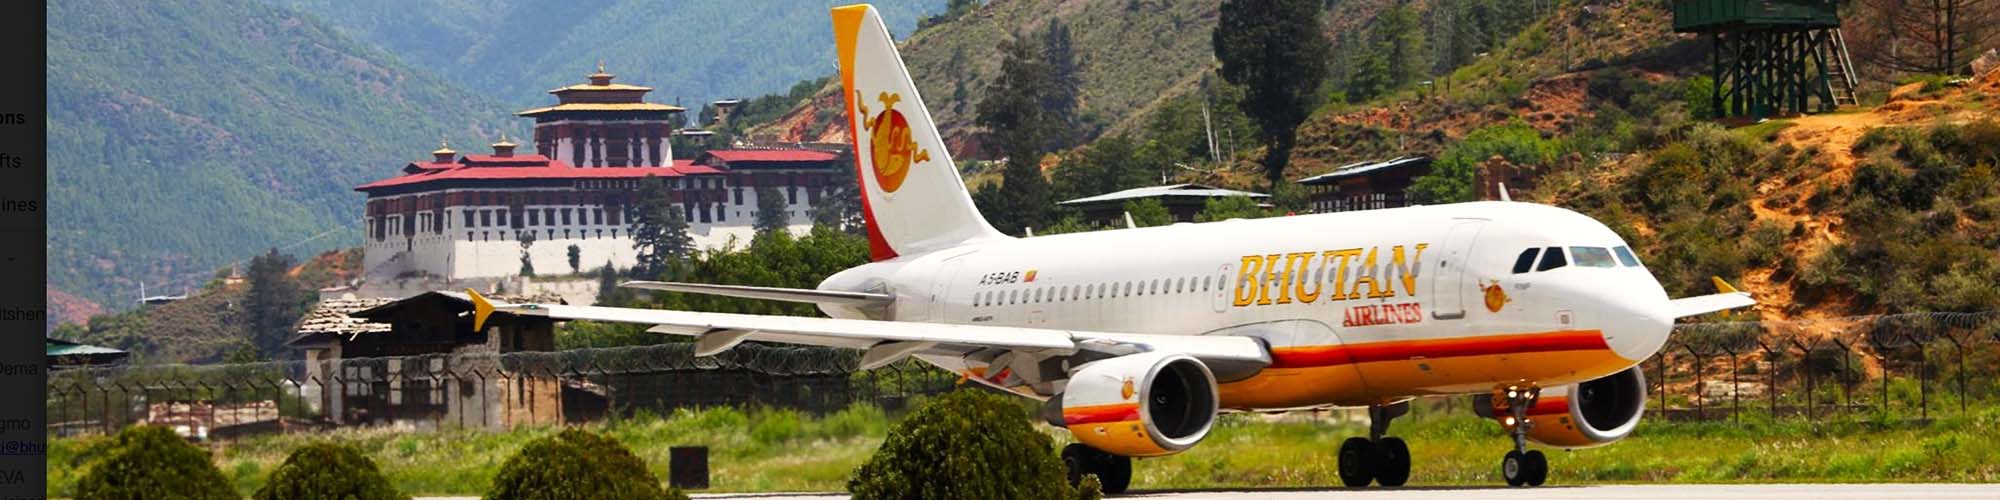 Аэропорт бутана. Аэропорт паро в бутане. Royal Bhutan Airlines. Butan Air. Бутан транспорт.